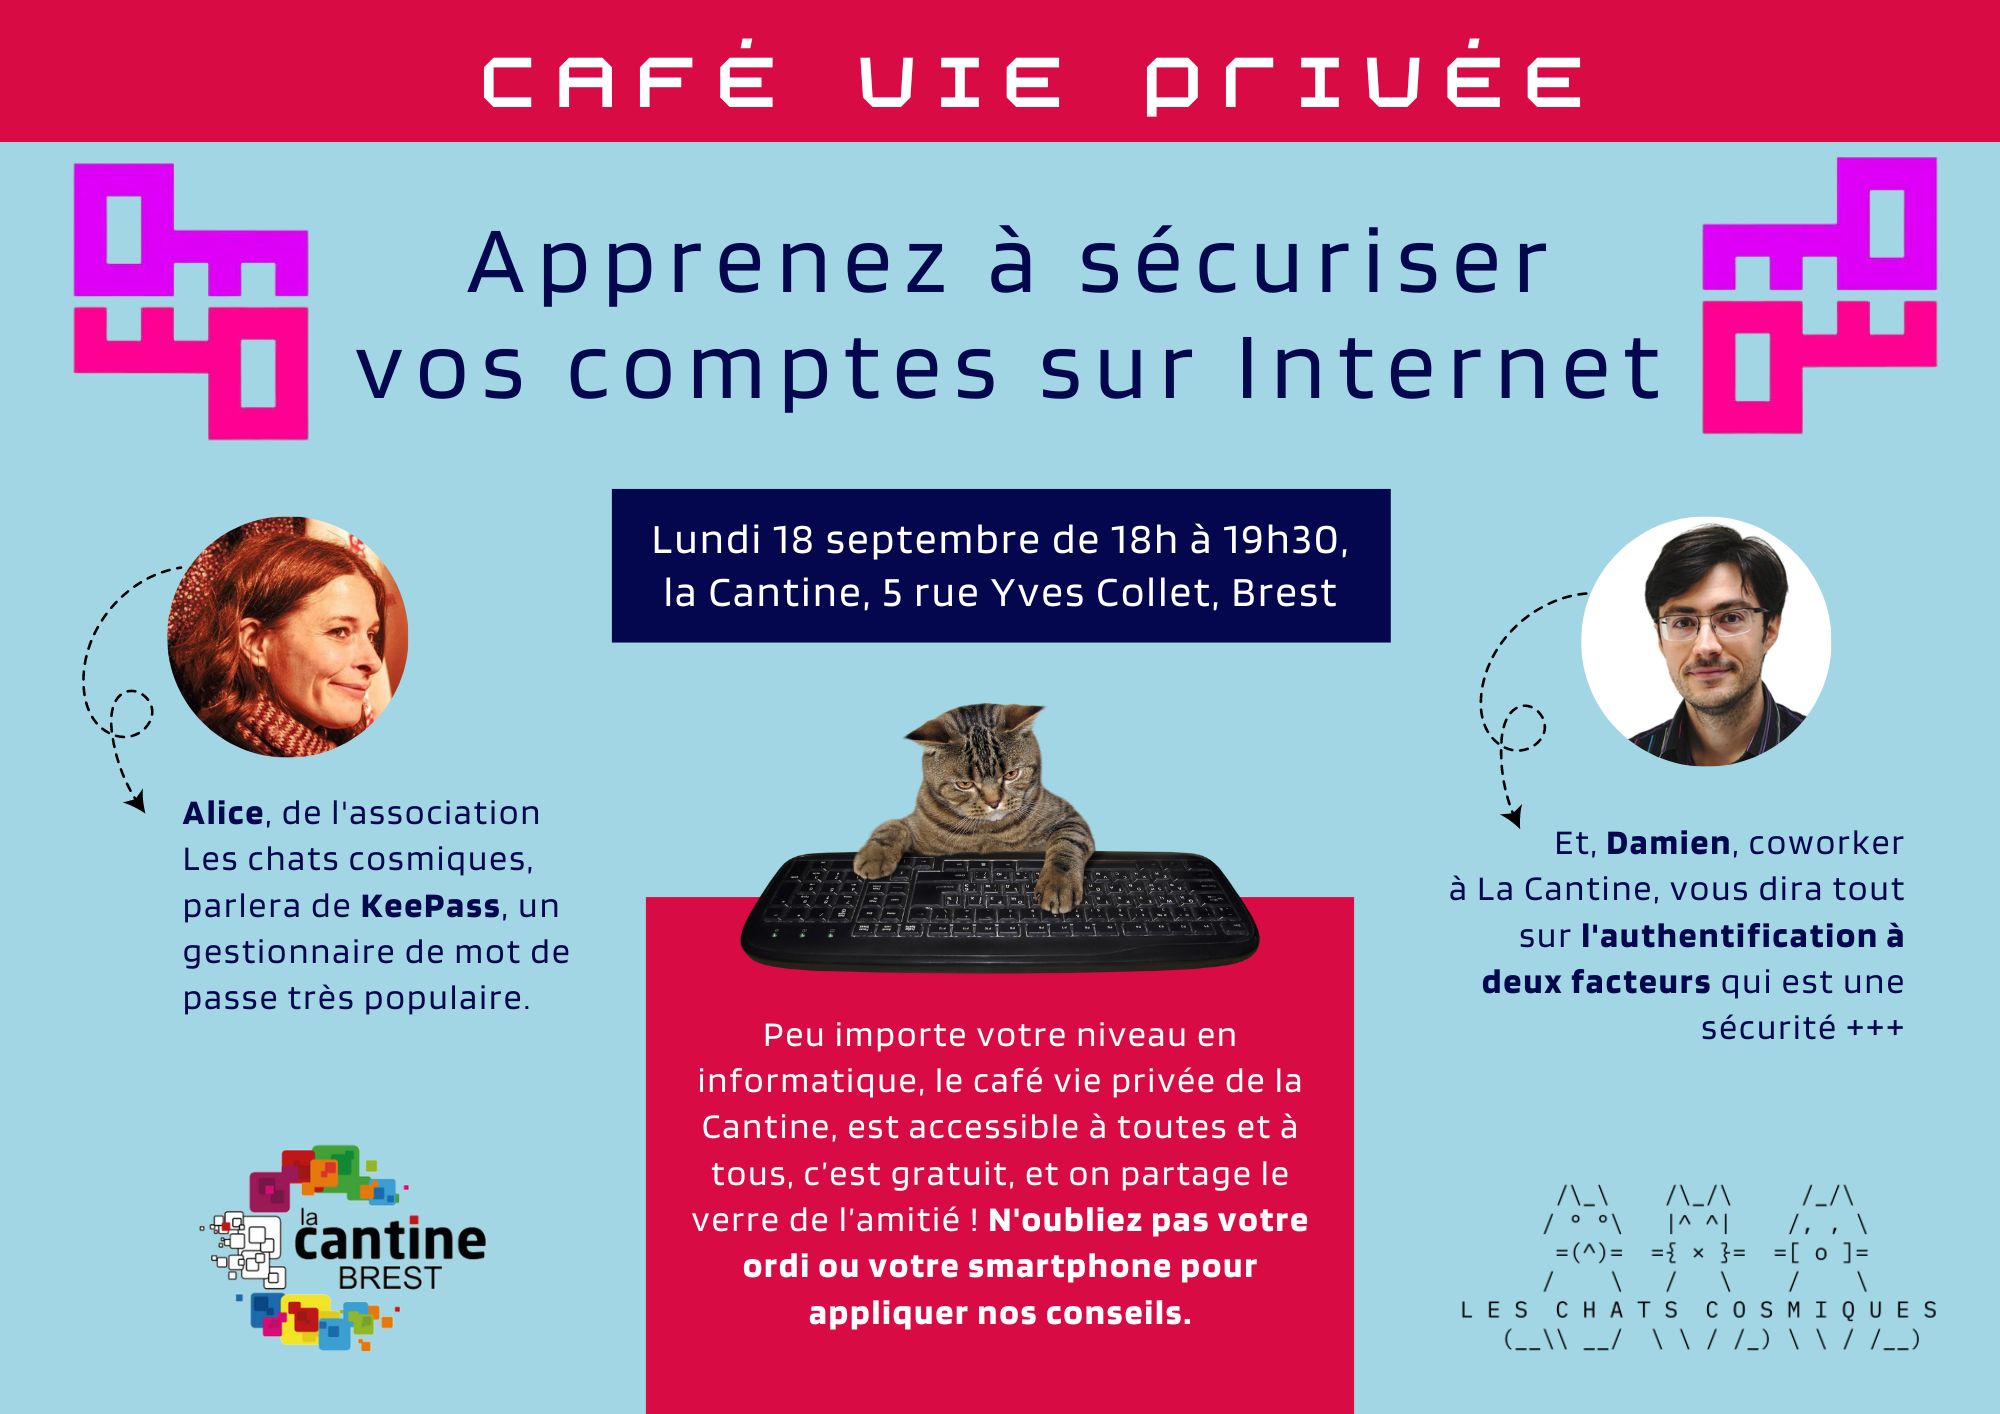 Visuel du café vie privée de la Cantine numérique de Brest le 18 septembre